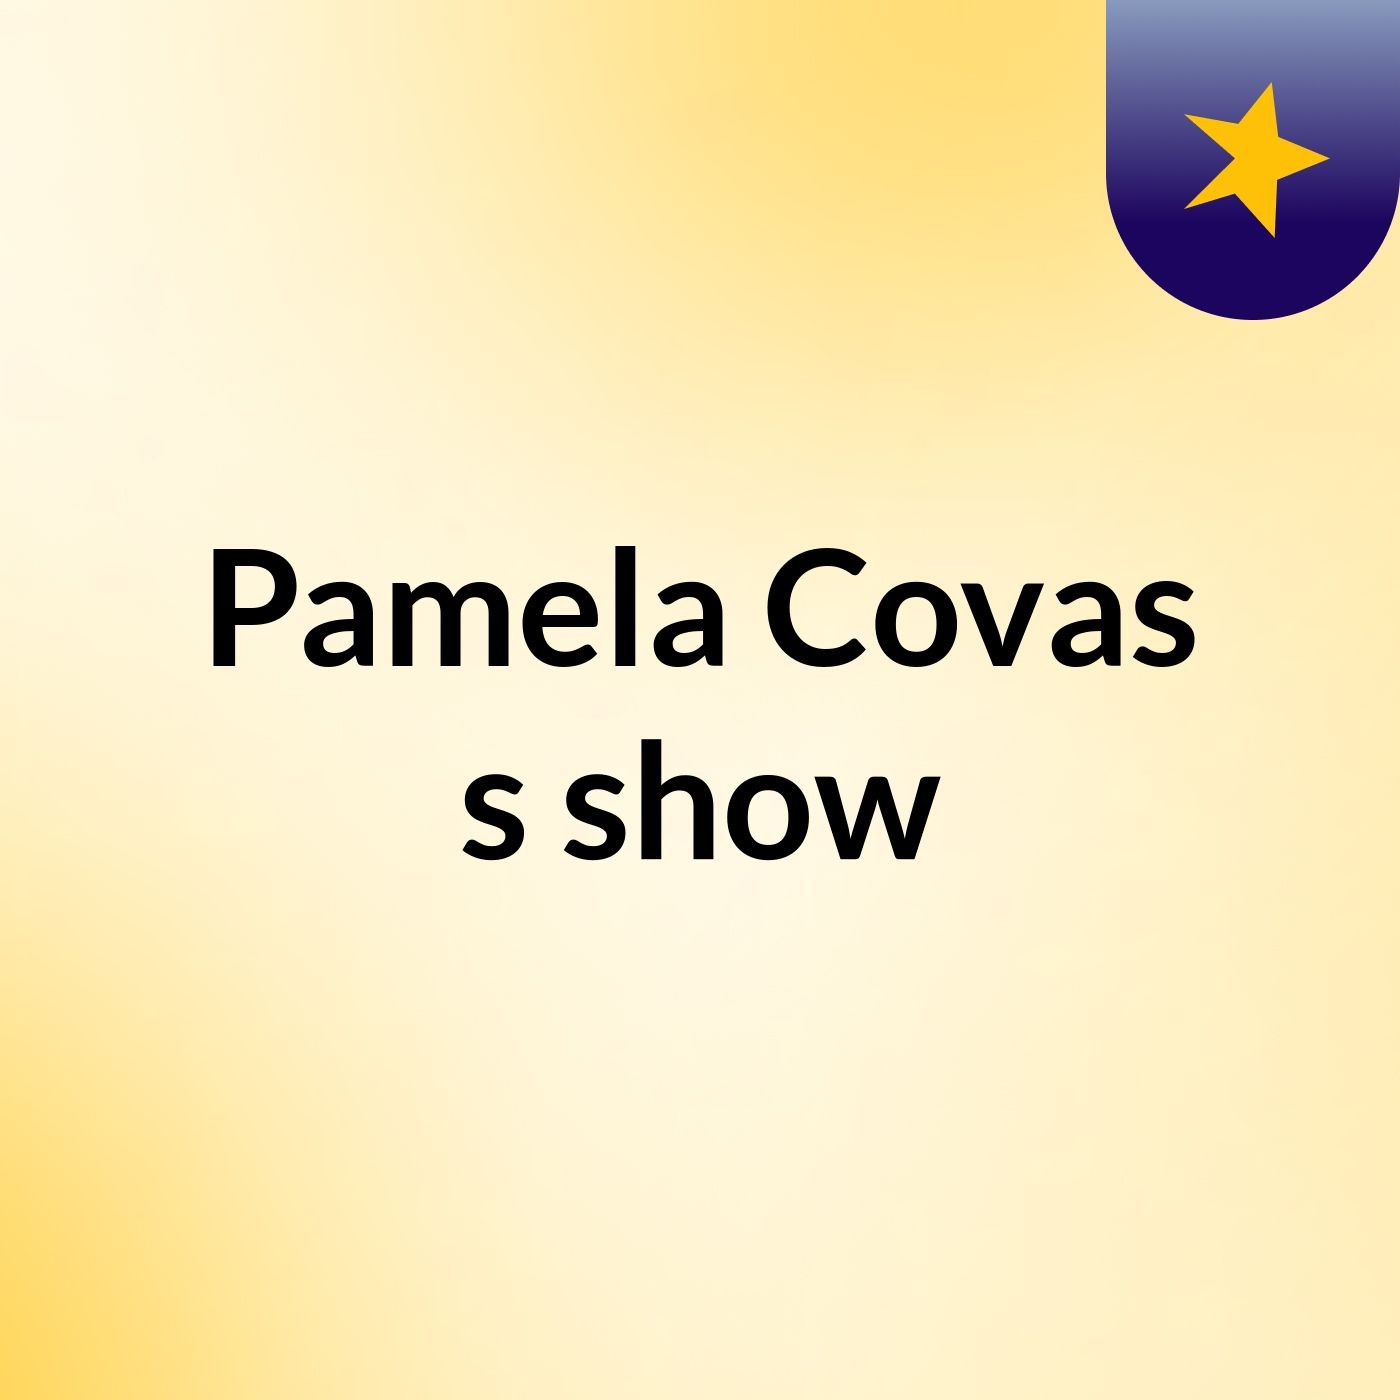 Pamela Covas's show